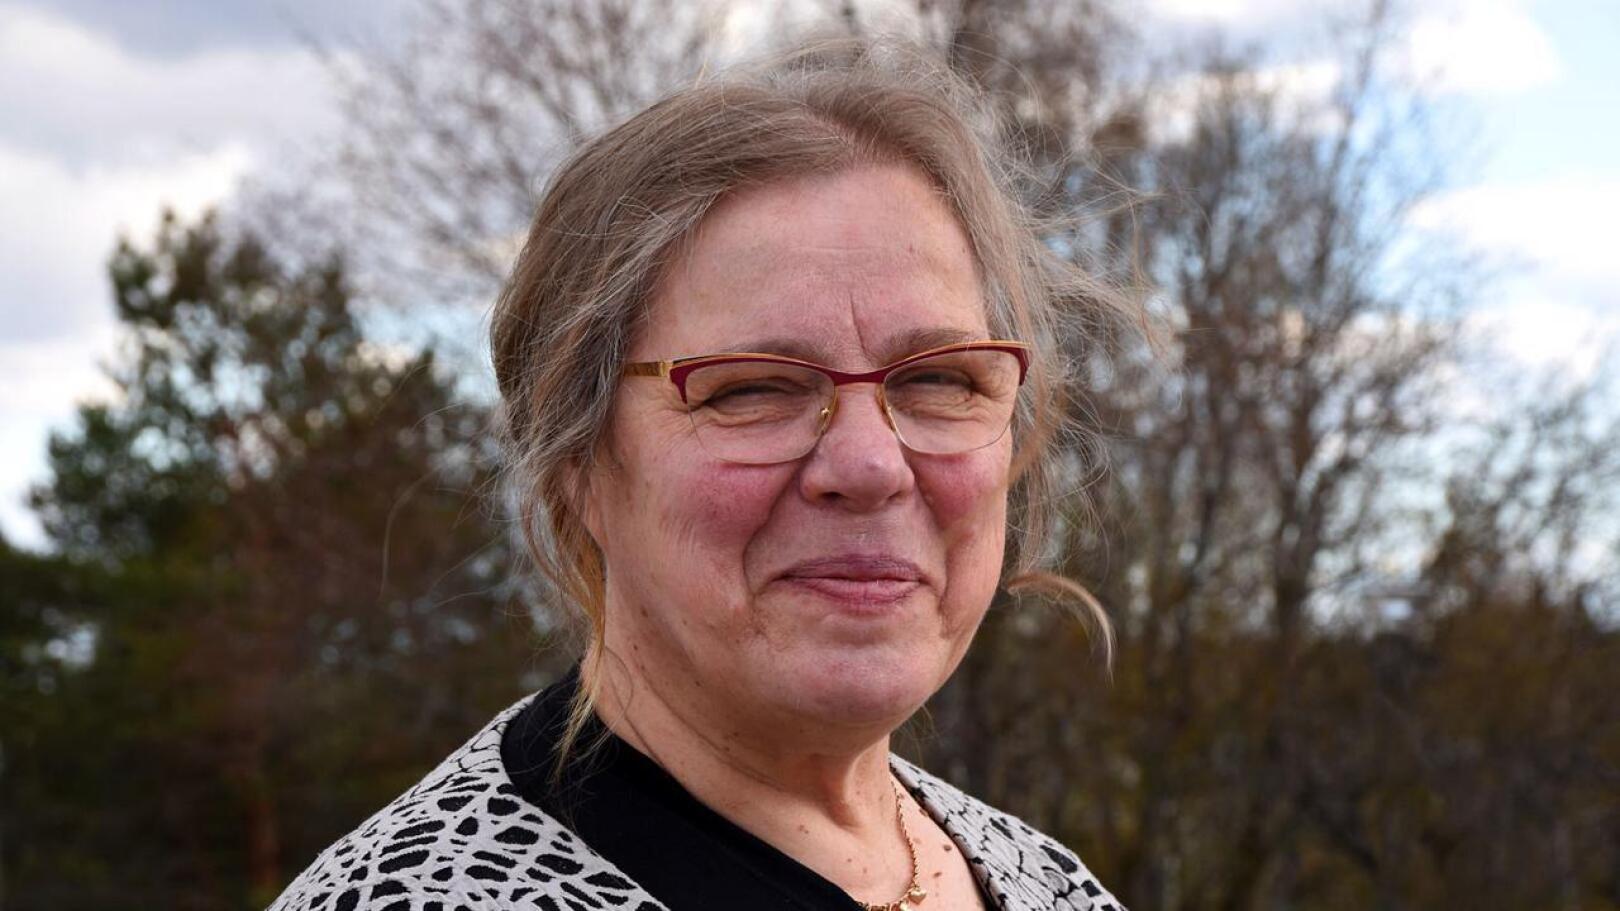 Helinä Niemelä aloitti työuran opettajana eikä luopunut opettajuudesta vaikka ammatti vaihtui maatilan emännäksi.